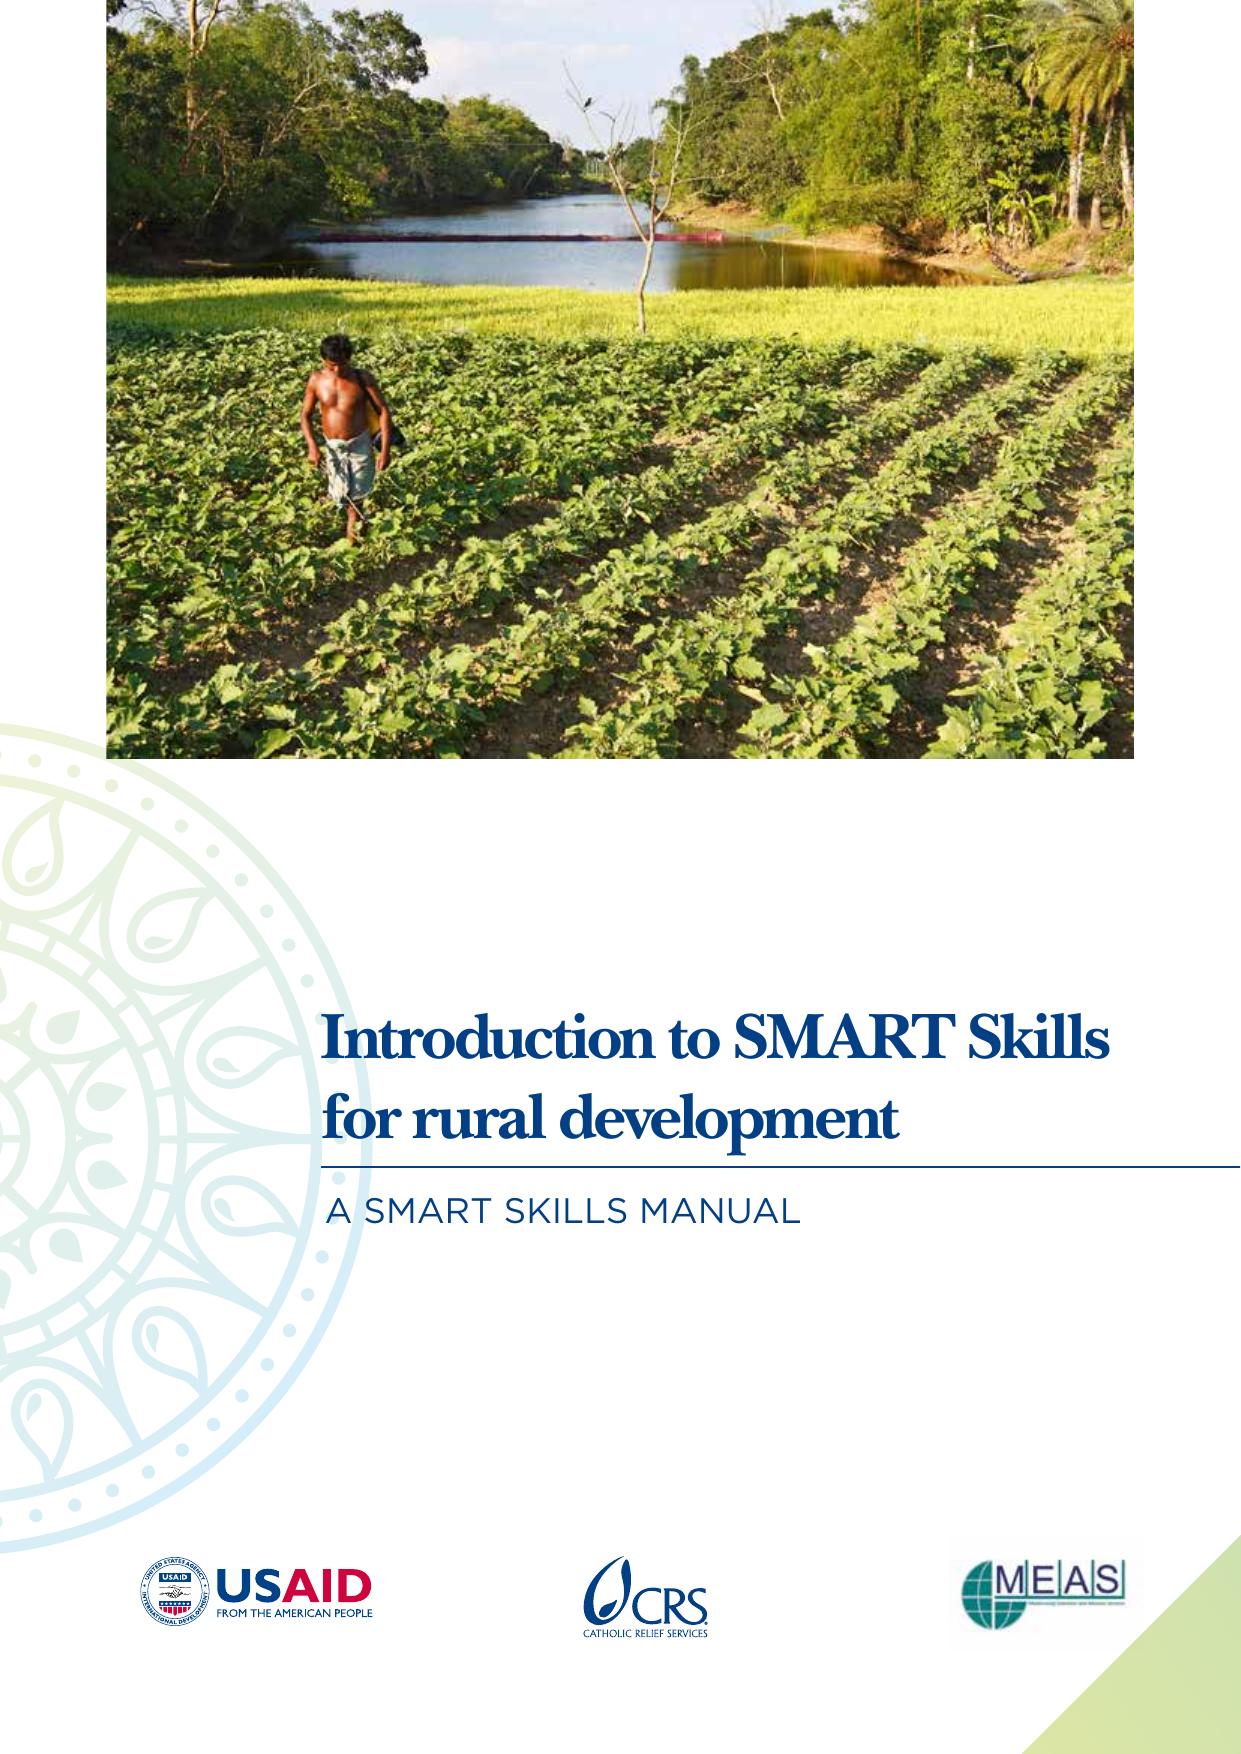 Smart skills for rural development 2015